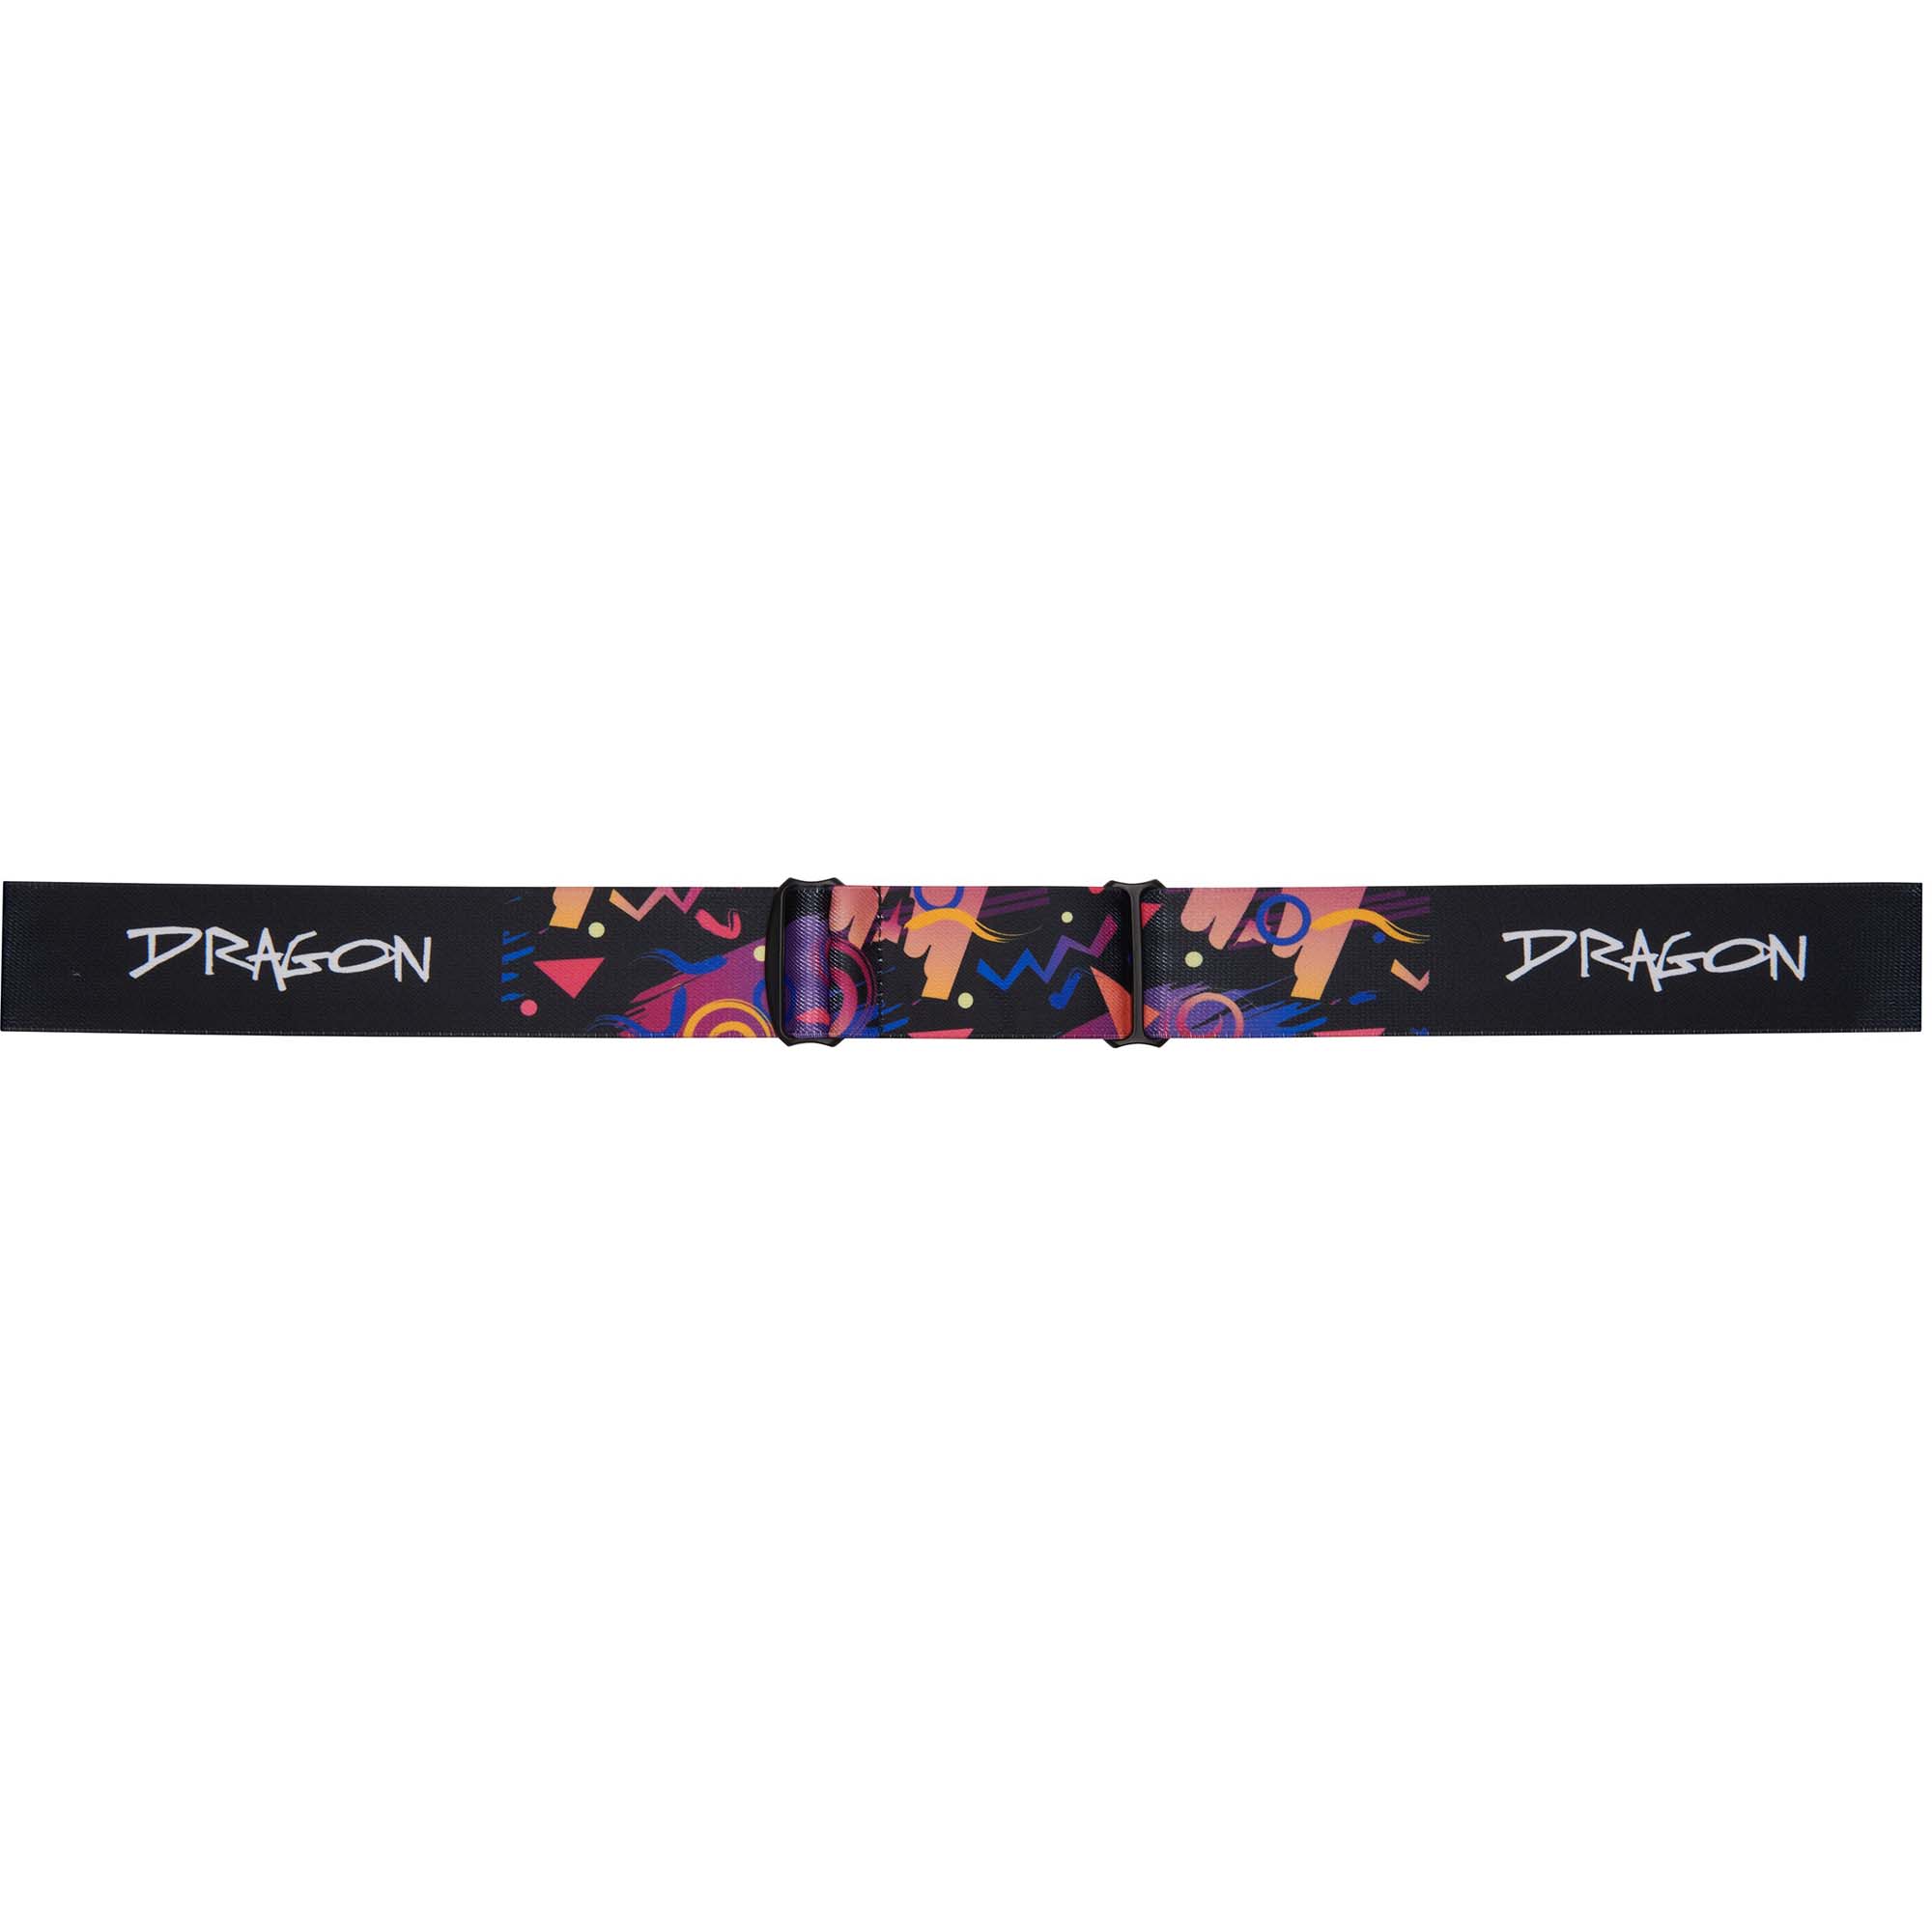 Dragon DX3 OTG Snowboard/Ski Goggles